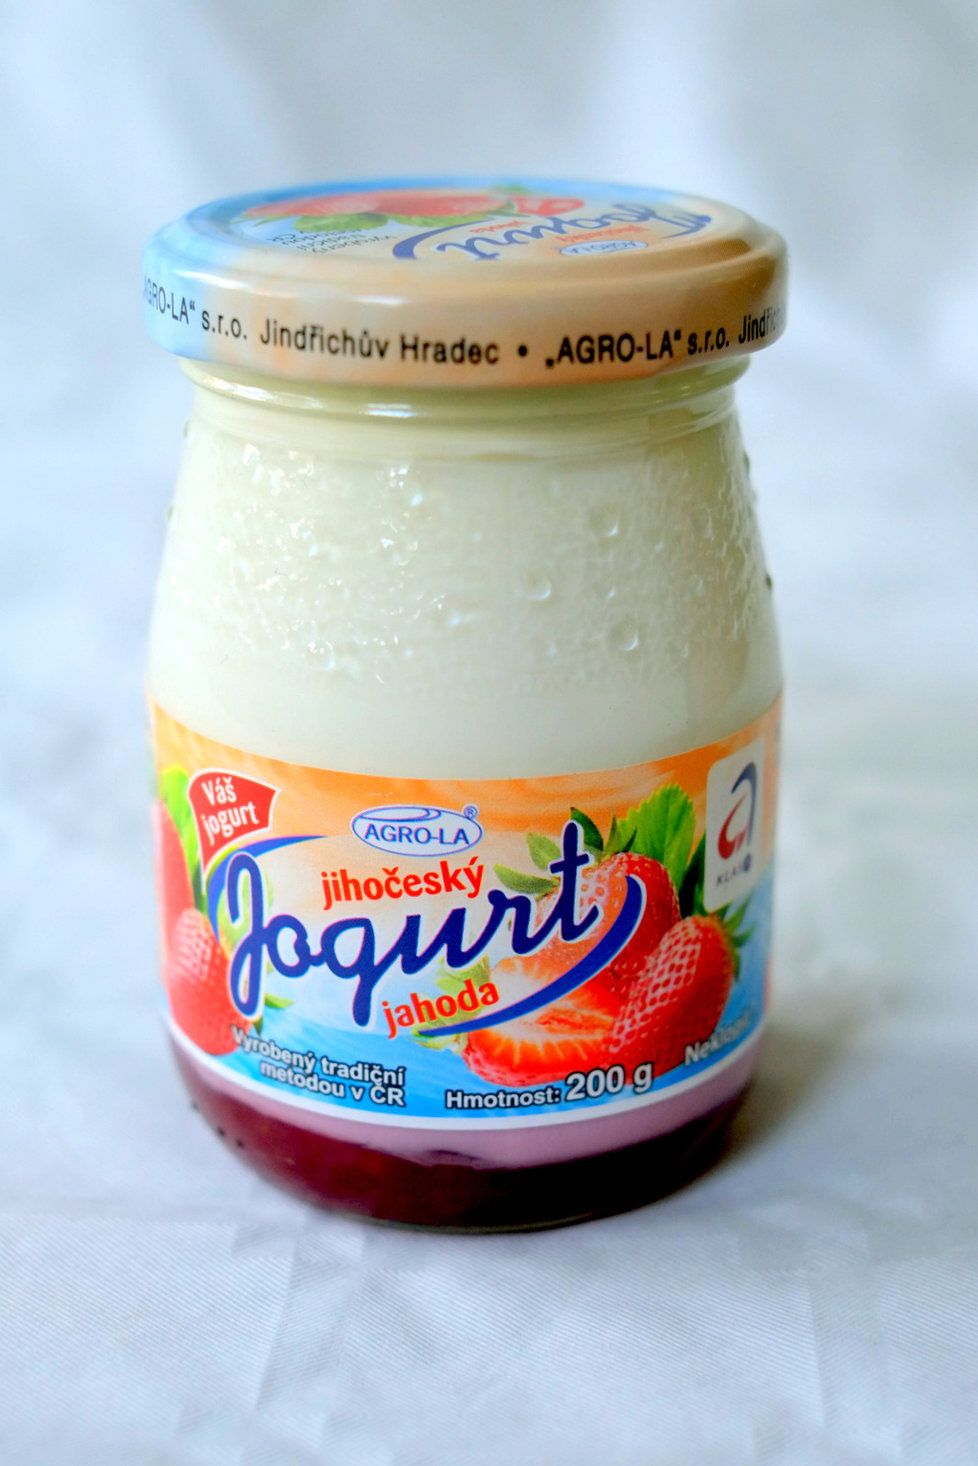 Jihočeský jogurt Jahoda - více než deset procent cukru